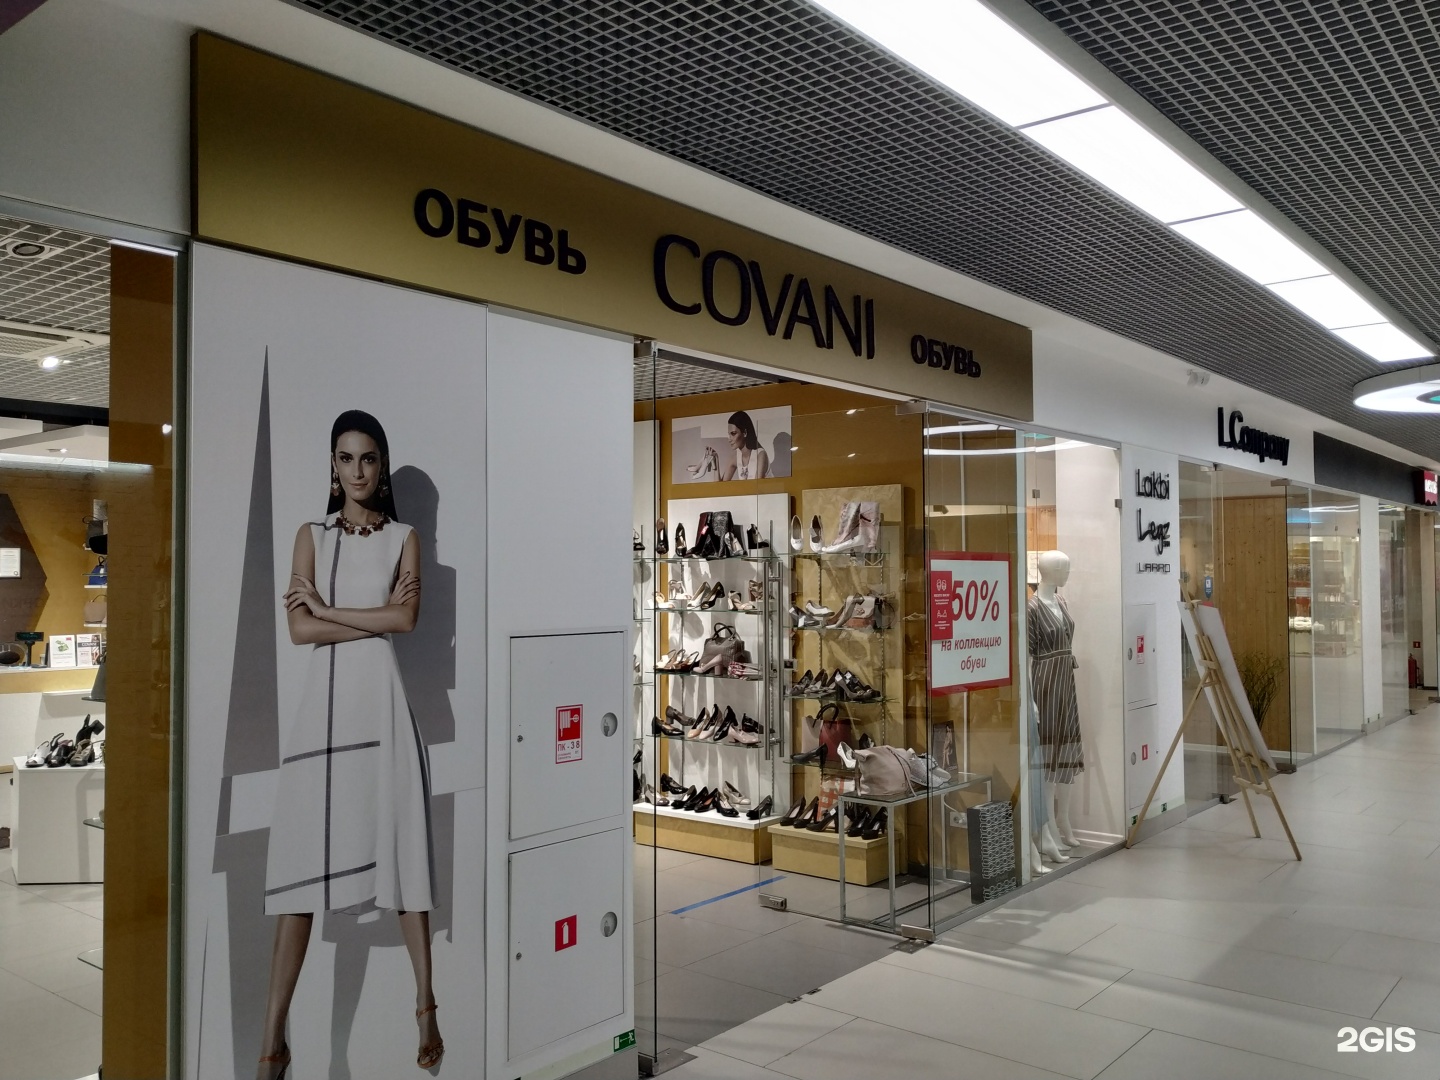 Обувь Covani Магазины В Москве